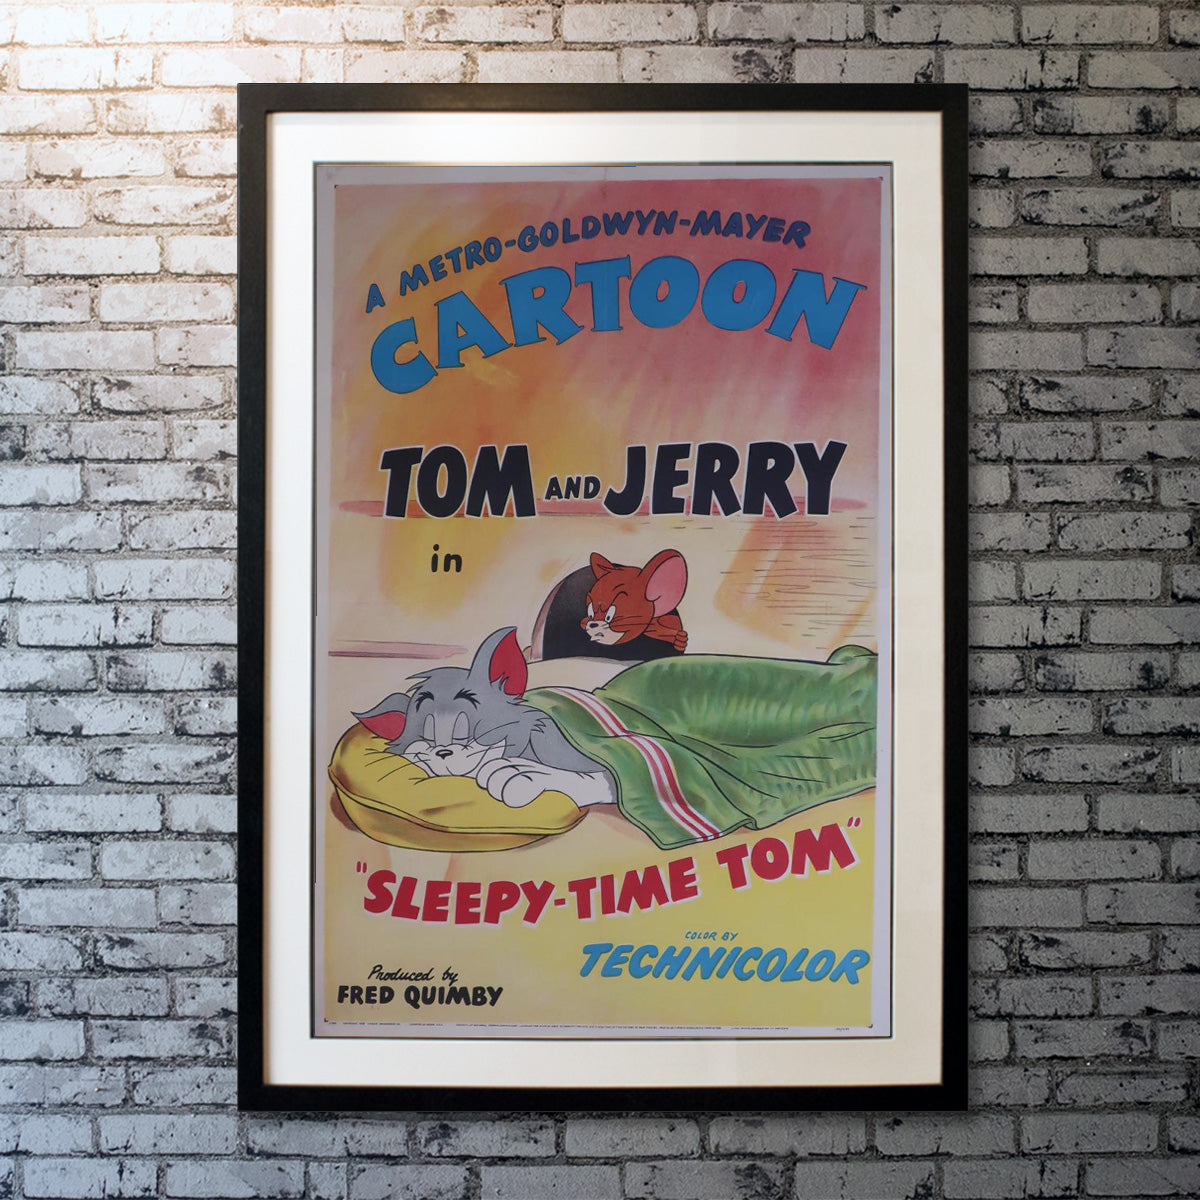 Tom And Jerry: Sleepy-Time Tom (1951)